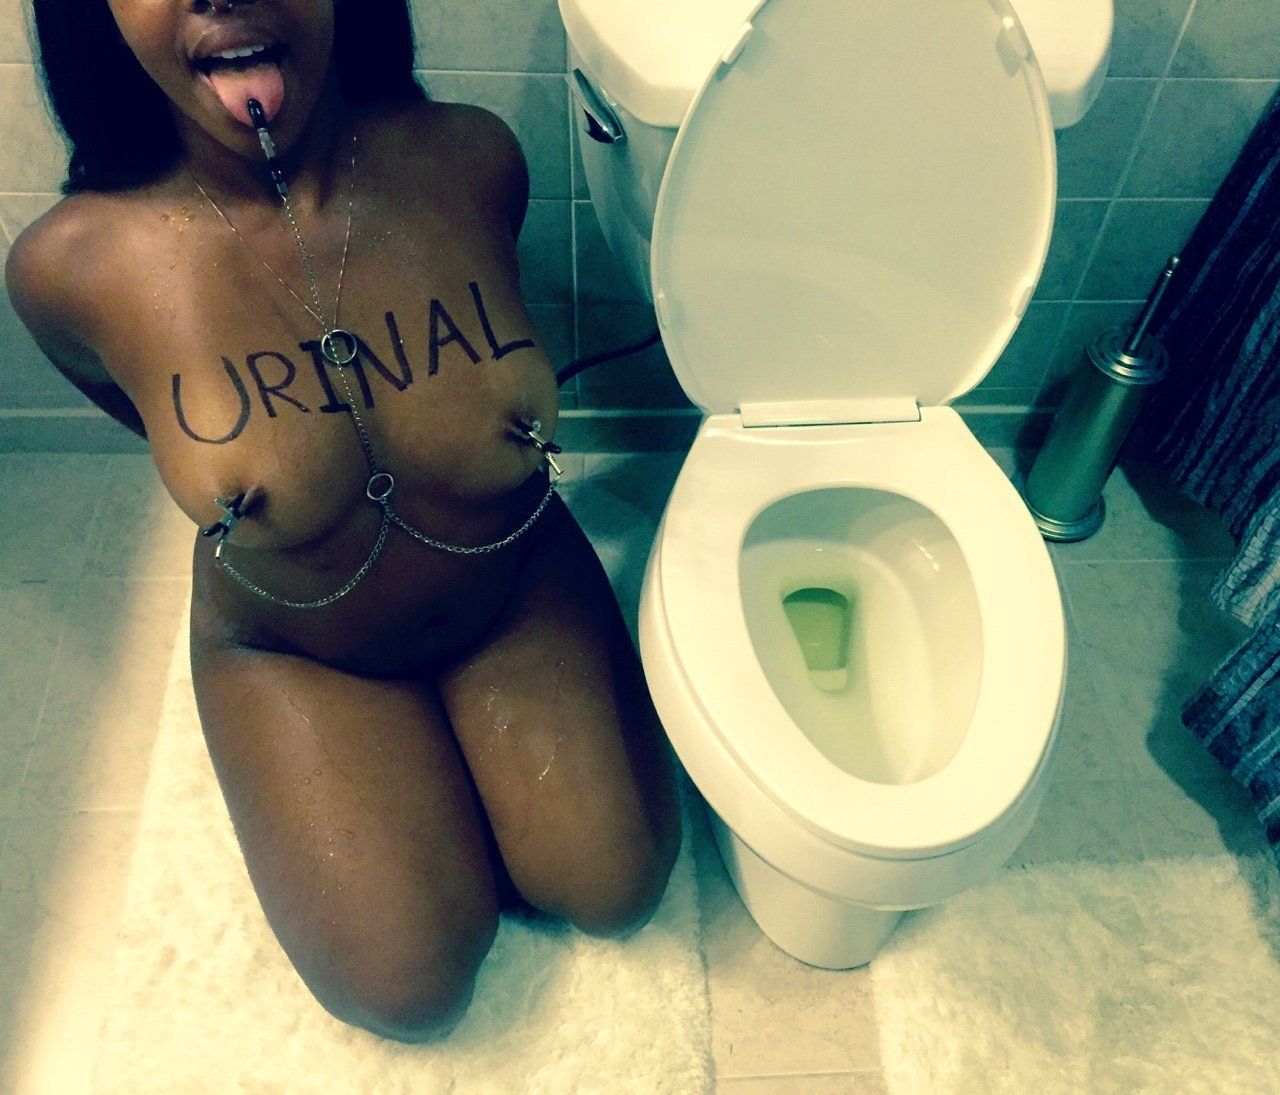 Urinal slave